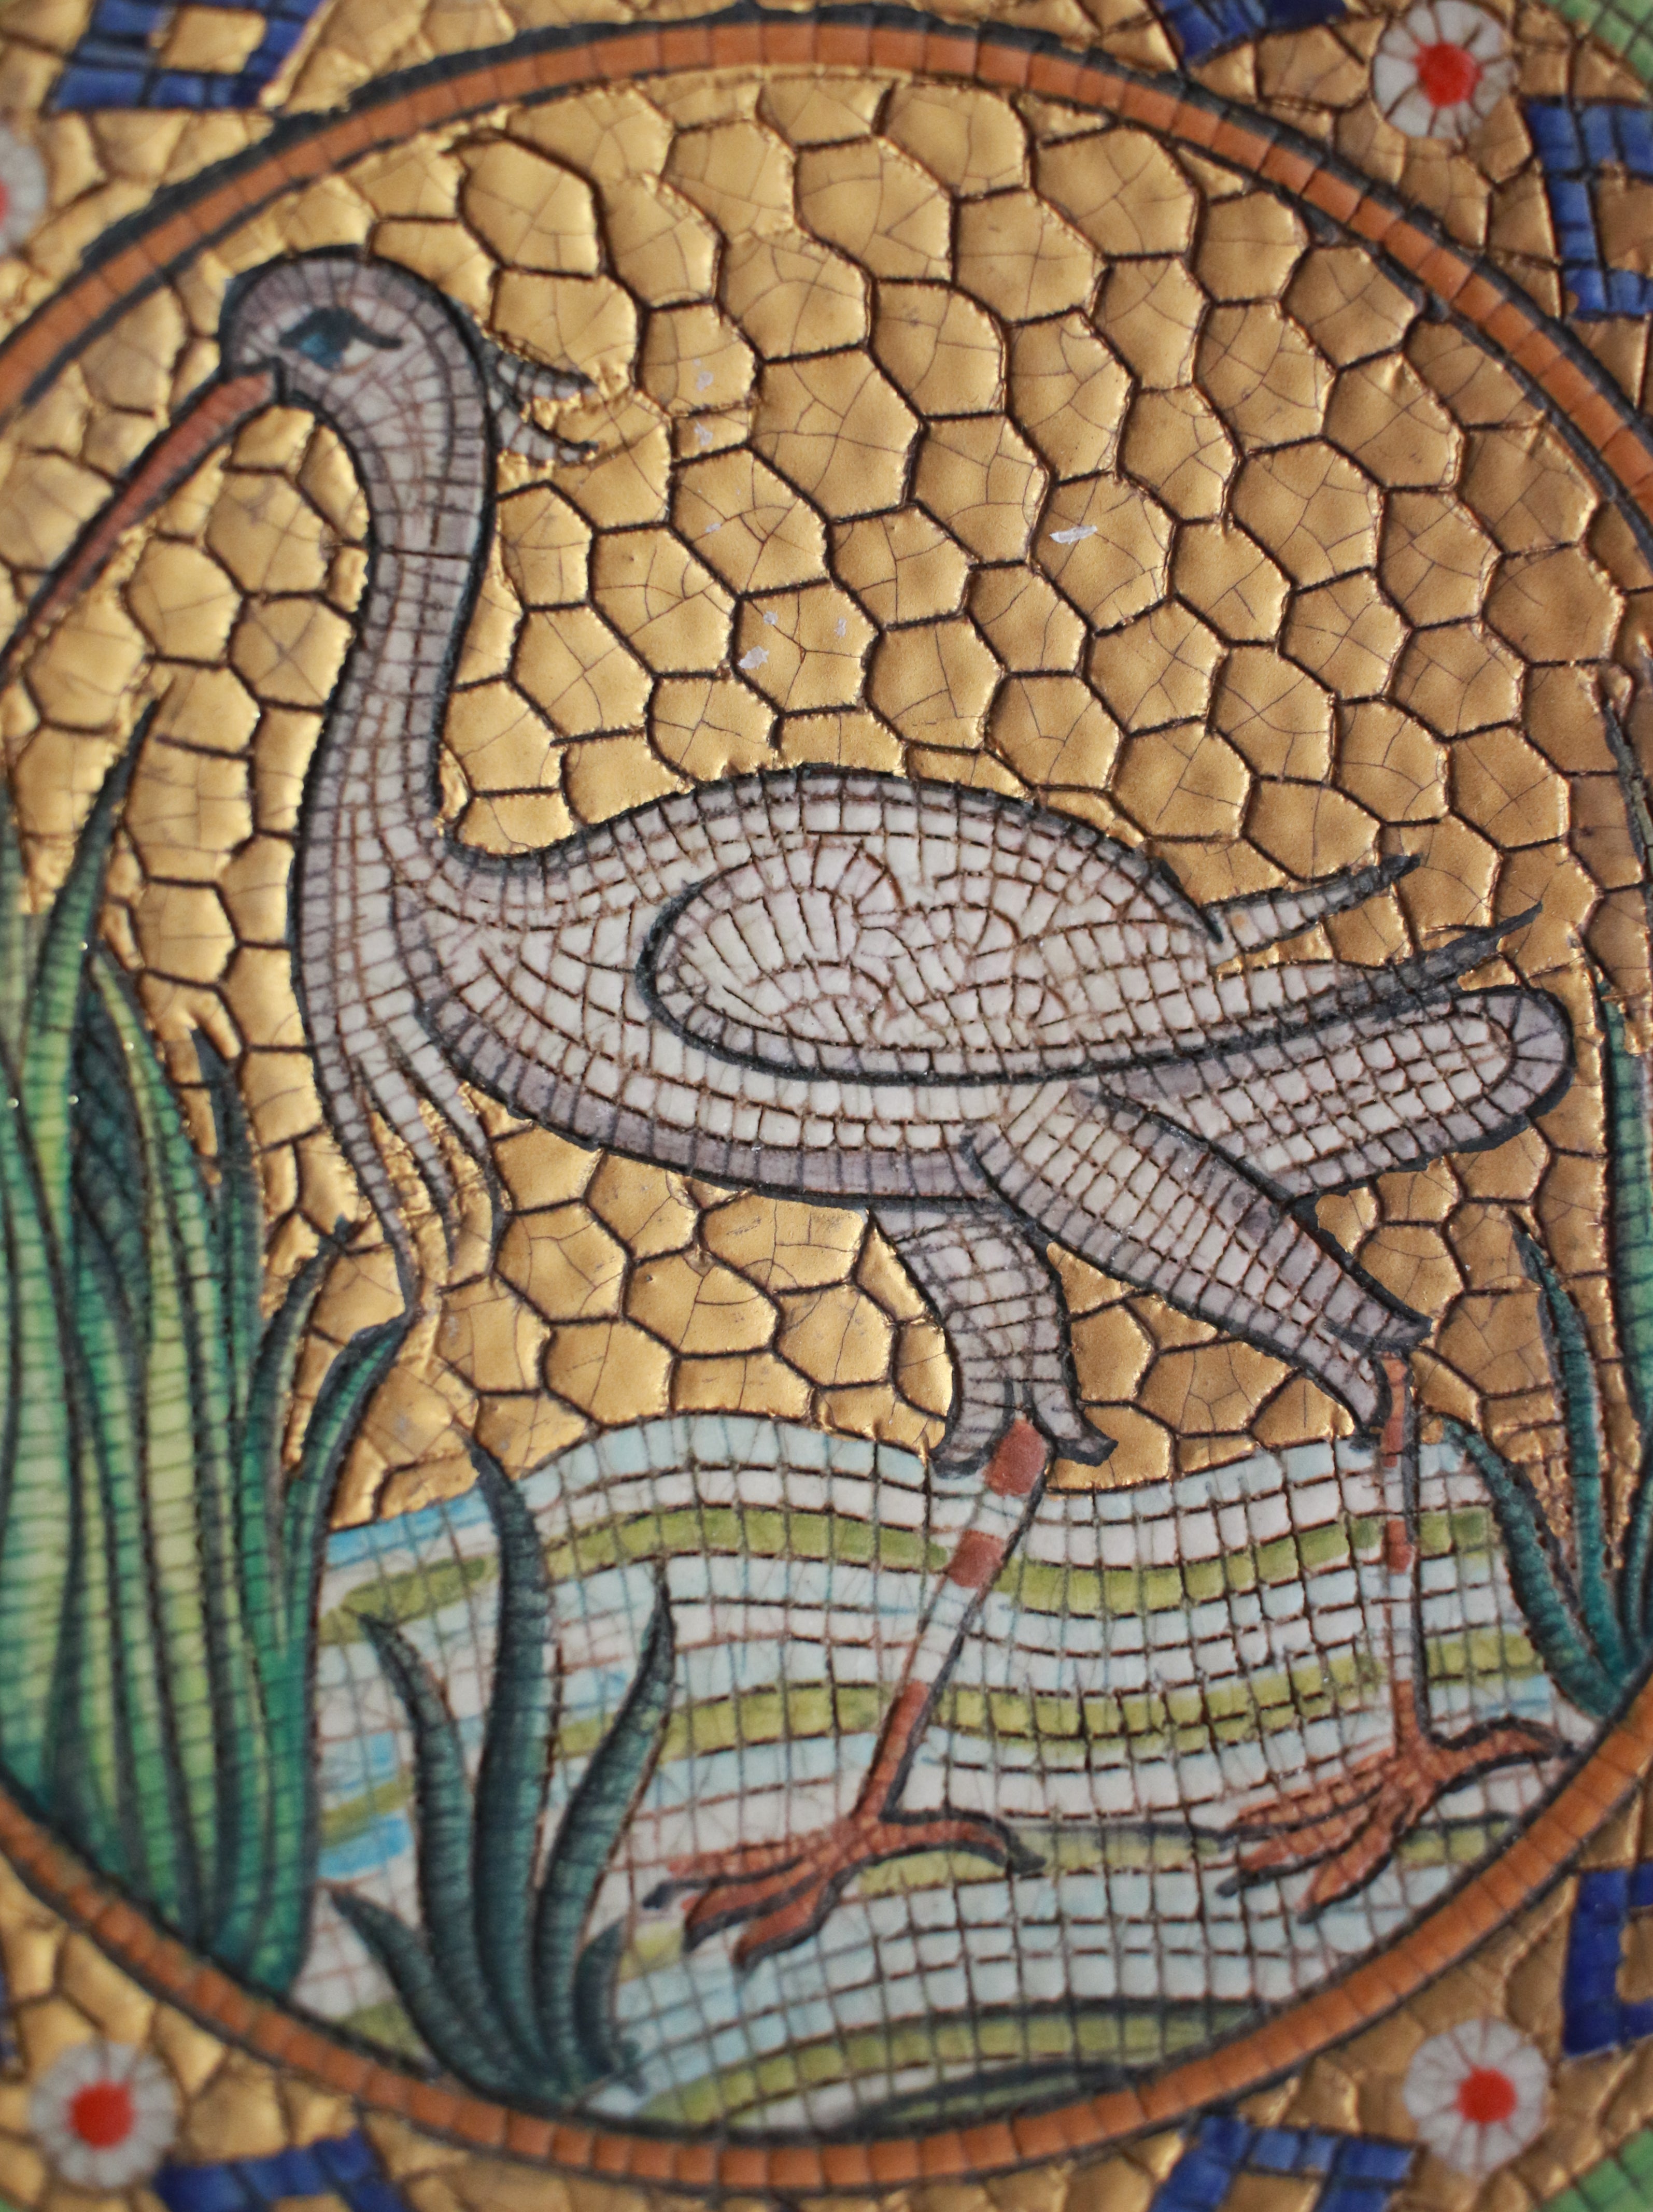 Mosaic Stork Dish | Whit's Vintage Picks